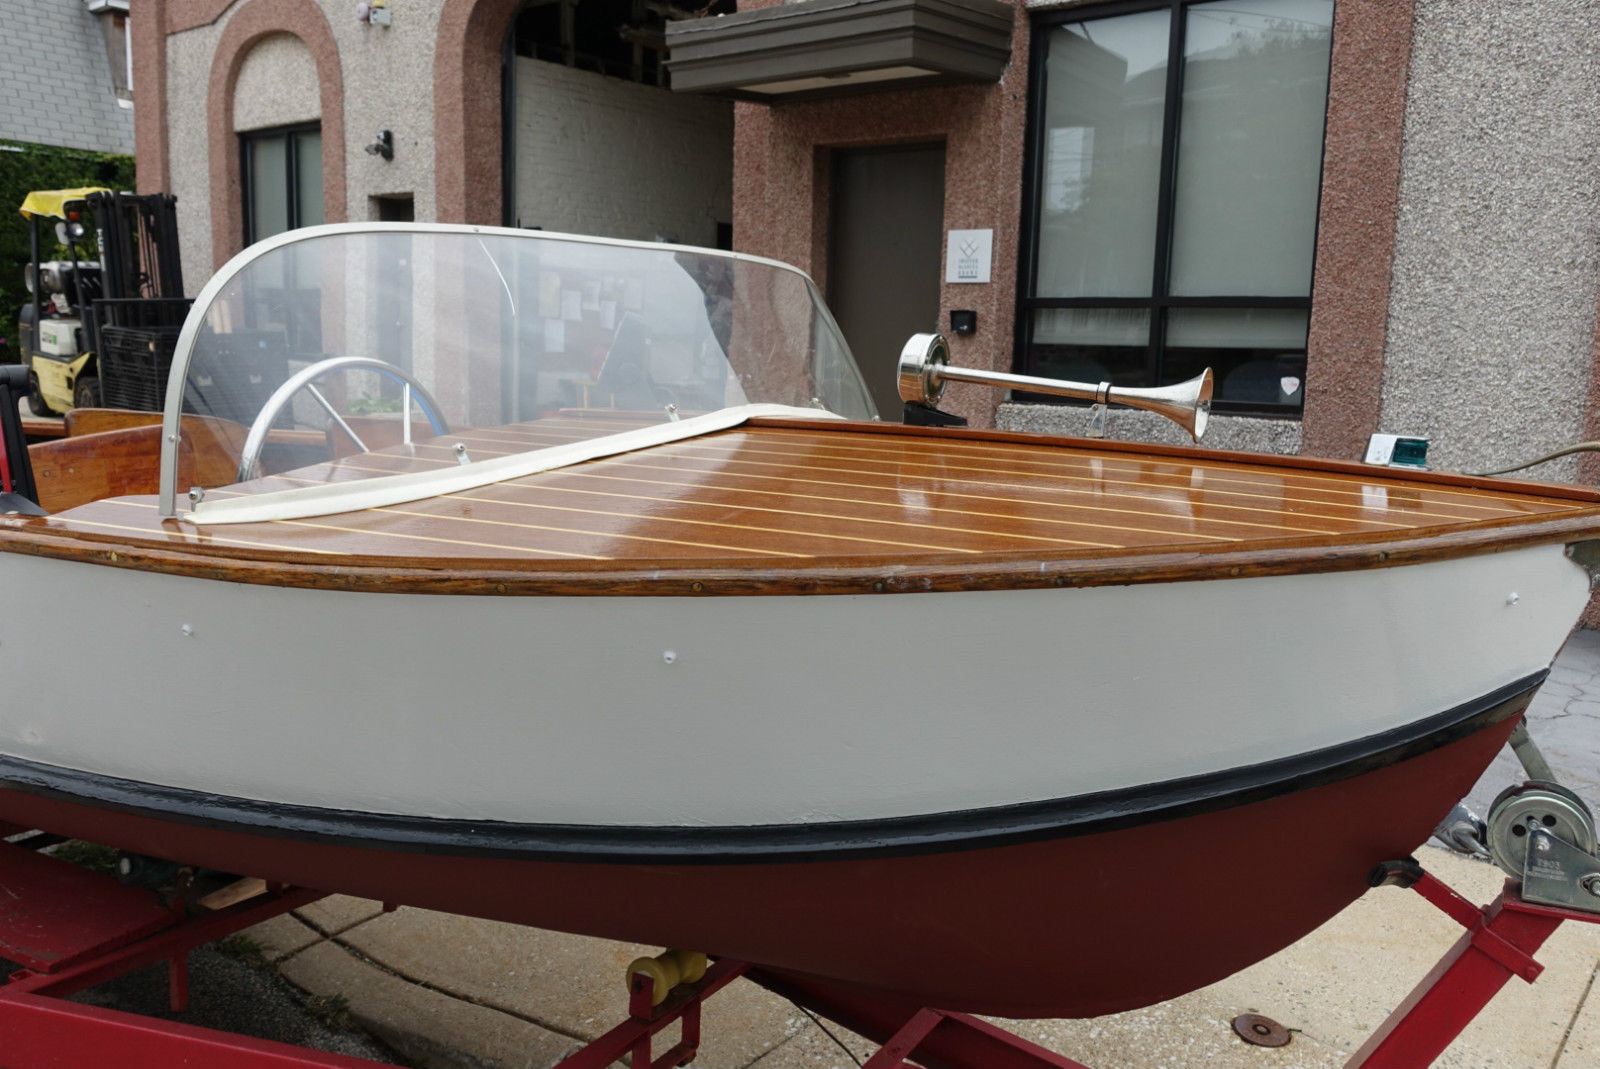 cadillac marine 556 mahogany 14 ft boat 1958 1958 for sale